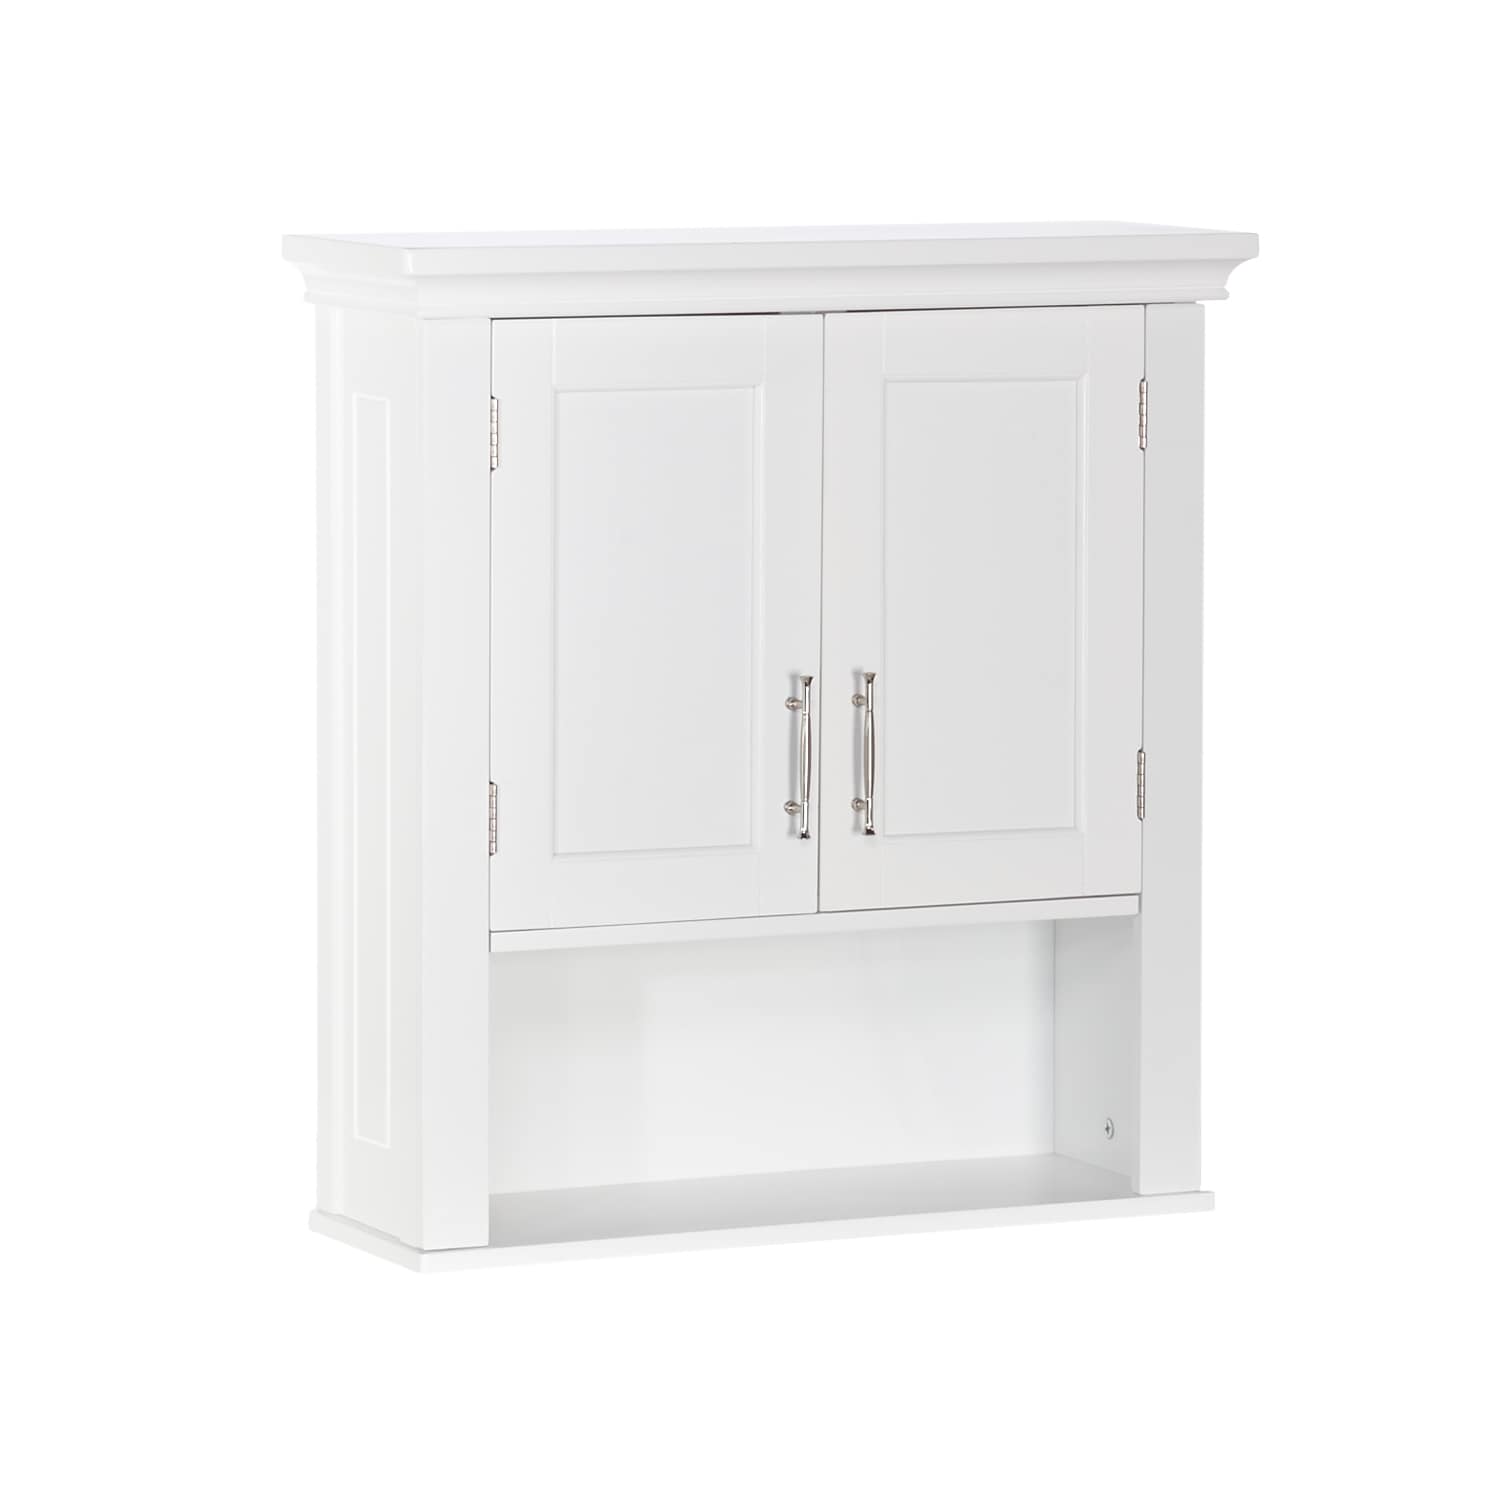 RiverRidge Somerset 22.81-in W x 24.5-in H x 7.88-in D White Bathroom Wall Cabinet